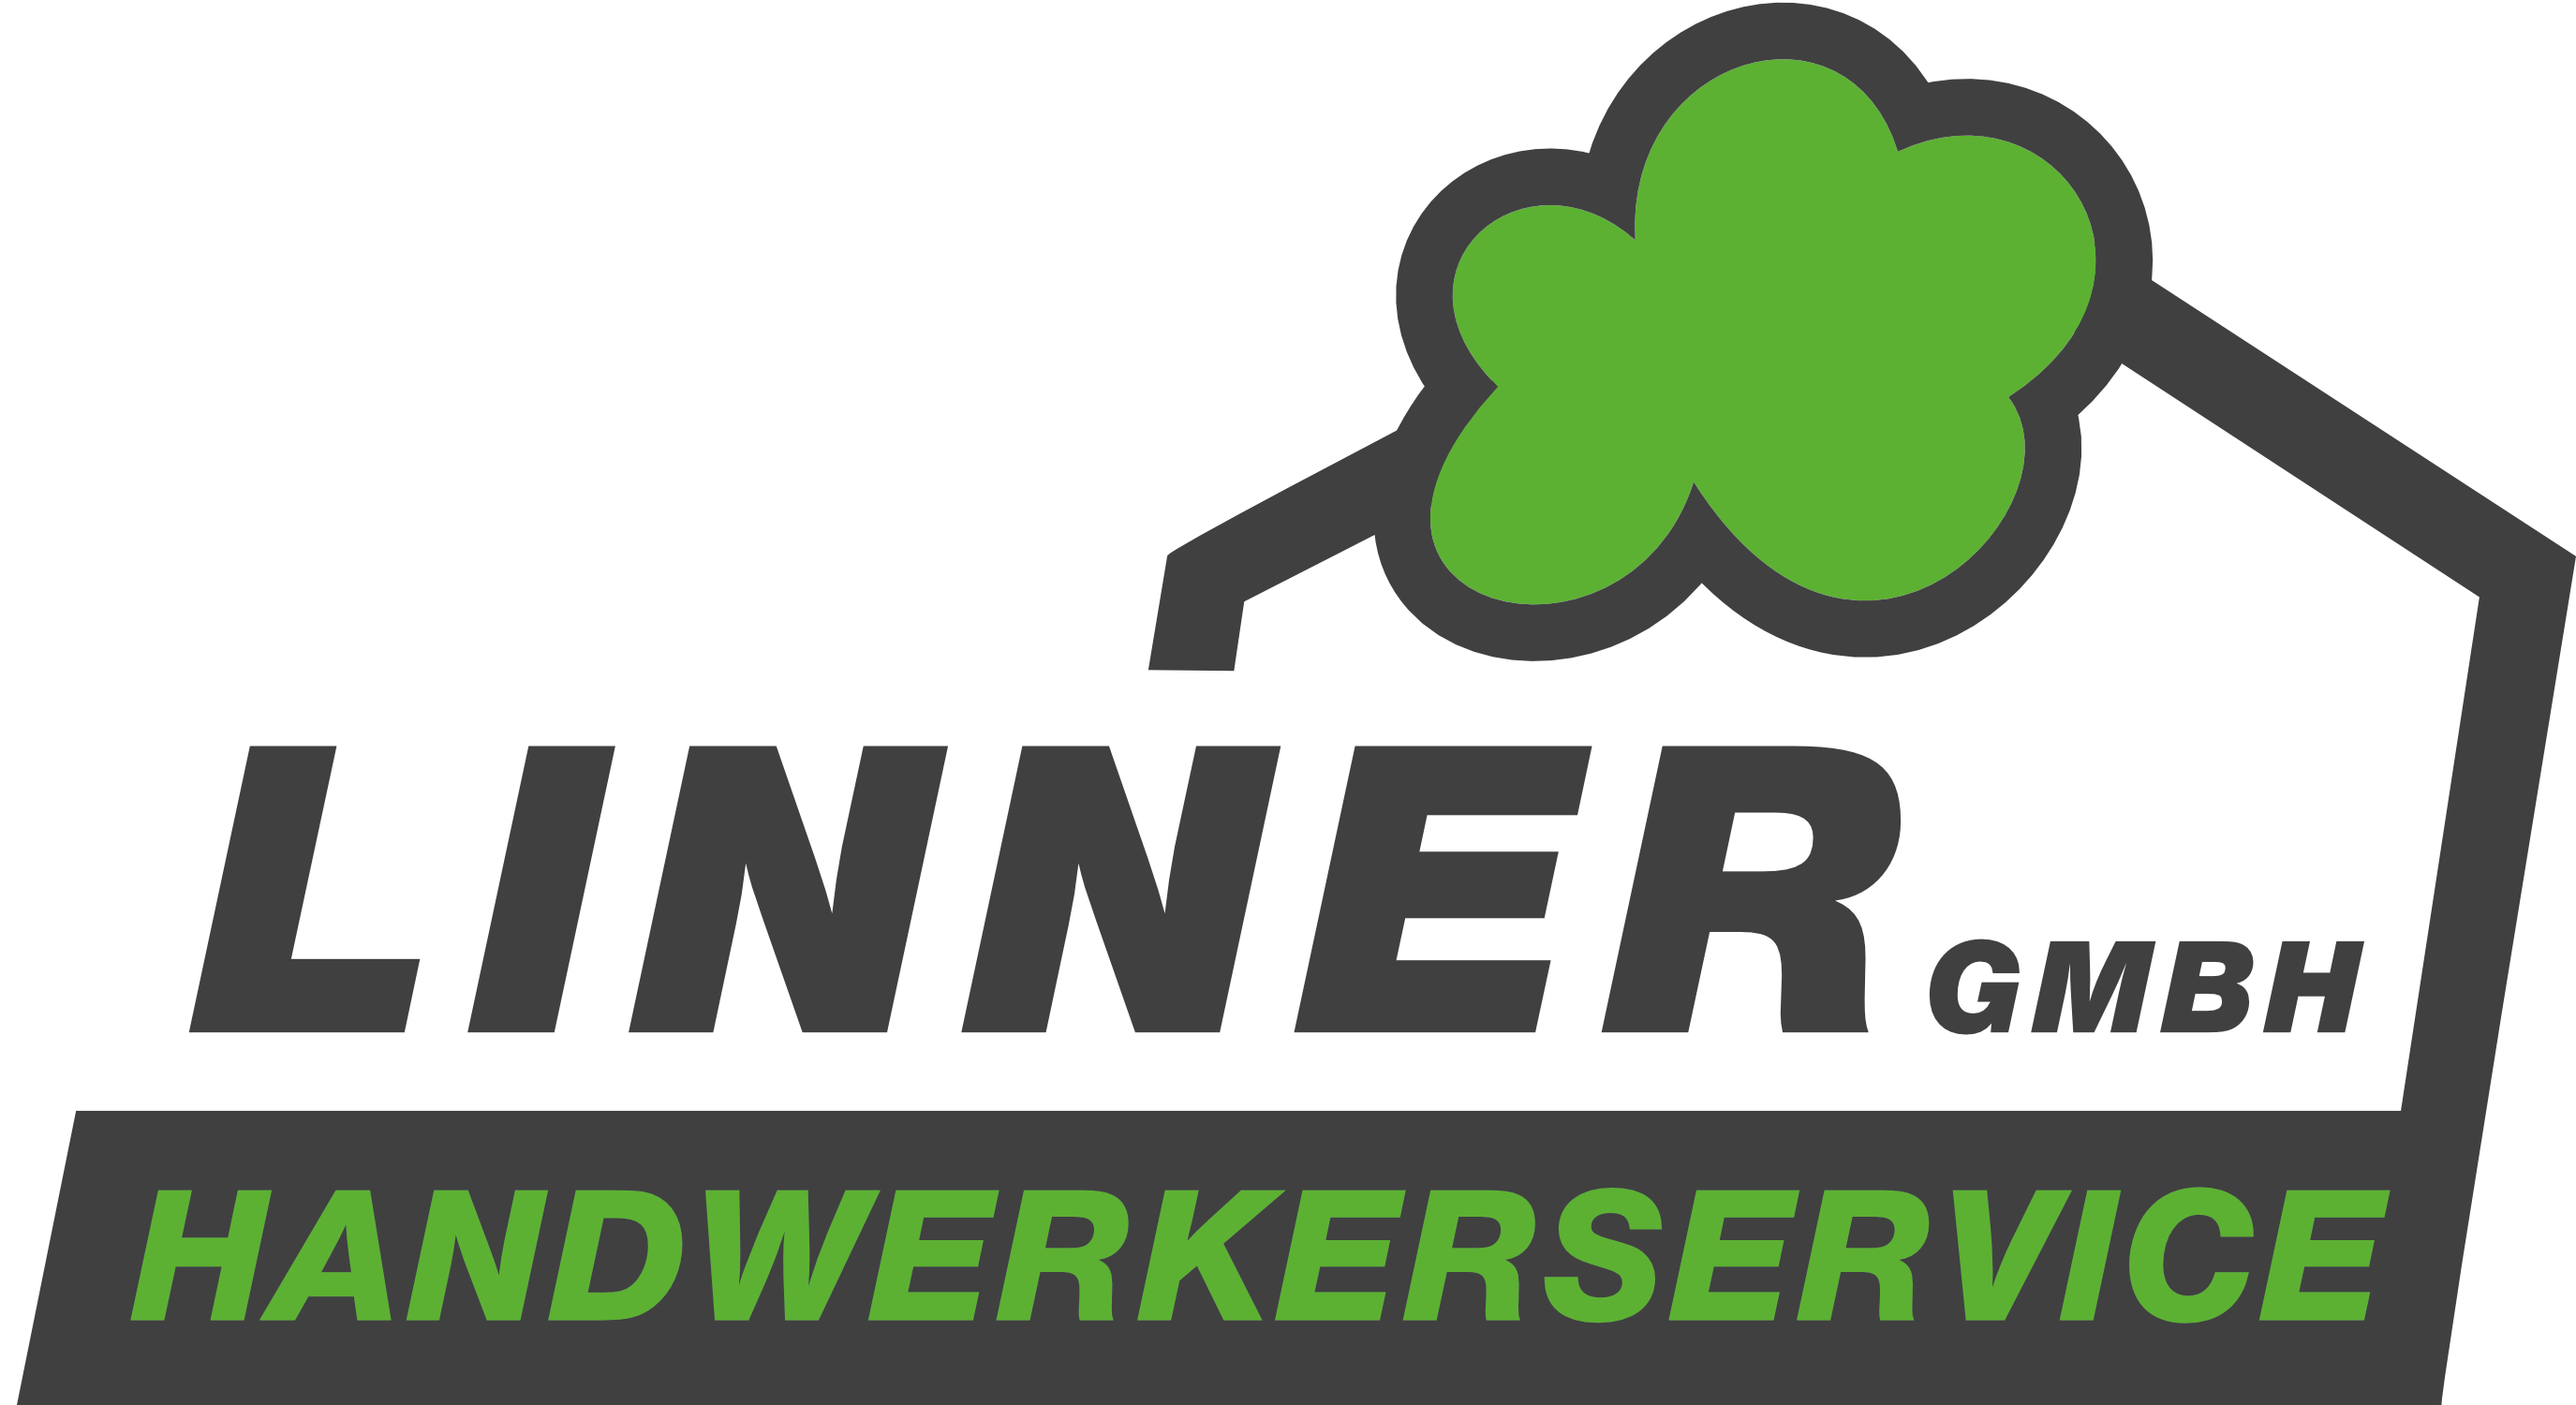 Handwerkwerservice Linner GmbH